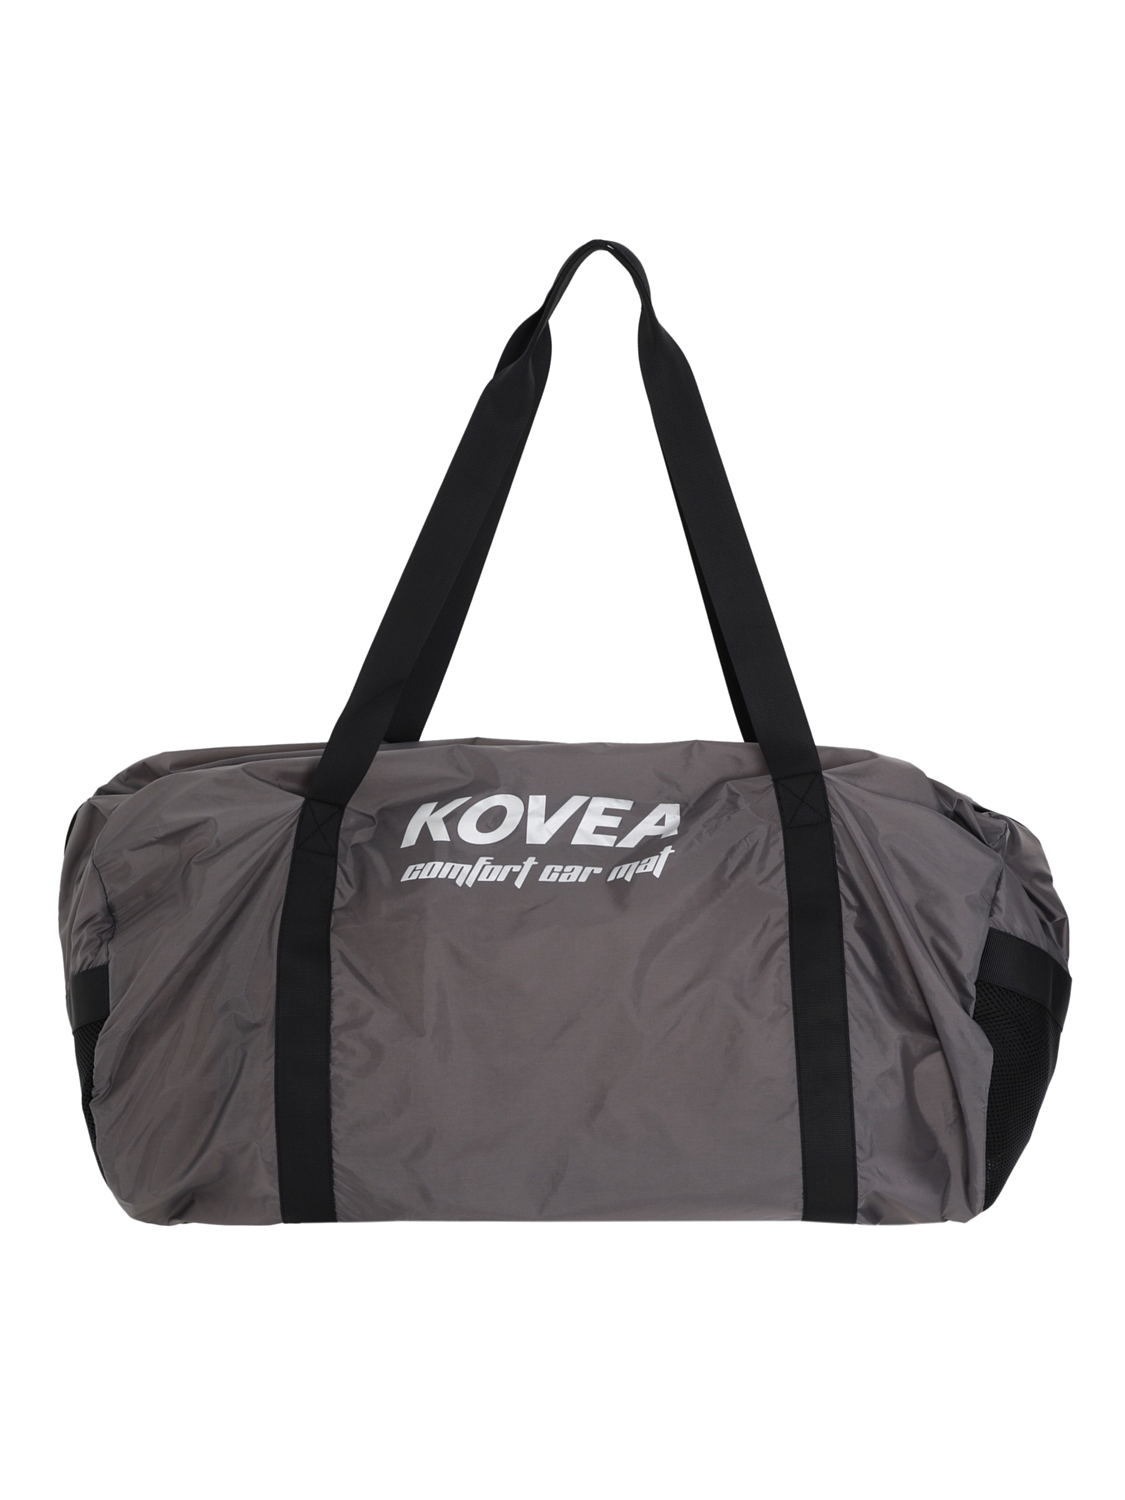 Коврик надувной Kovea Comfort Car Mat